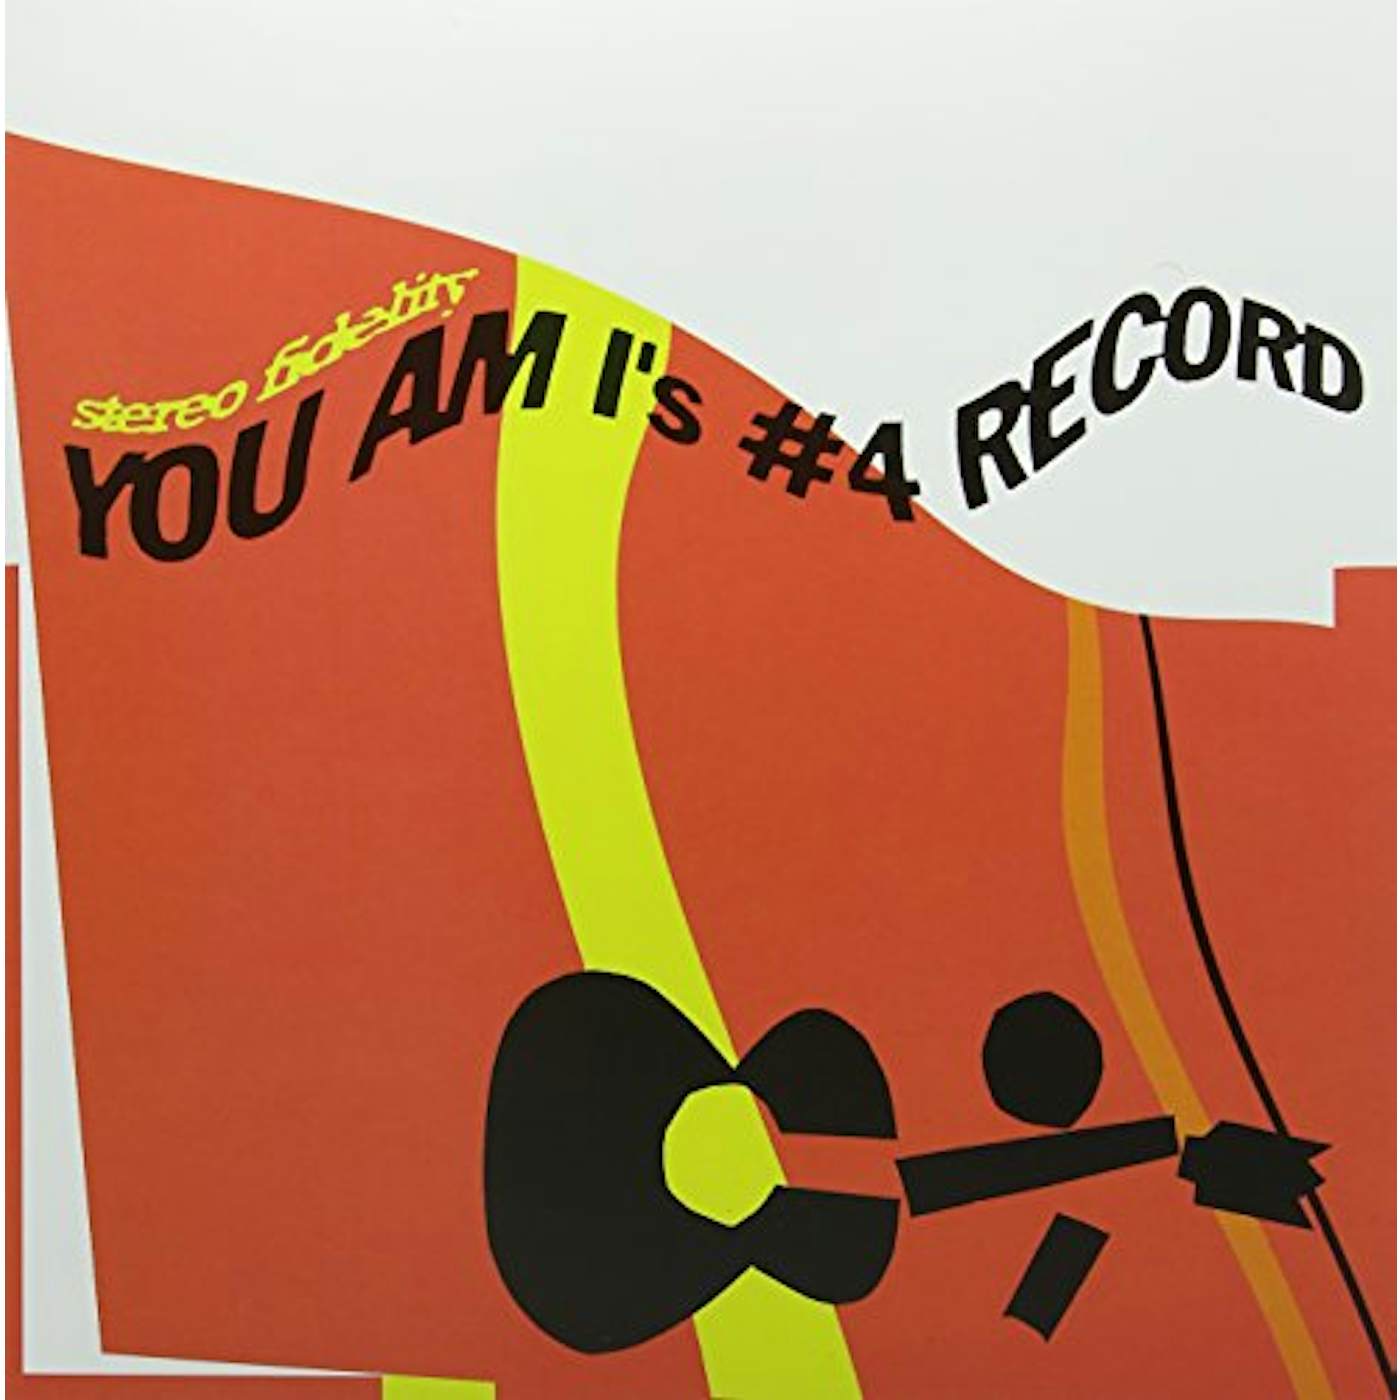 You Am I's #4 Record Vinyl Record